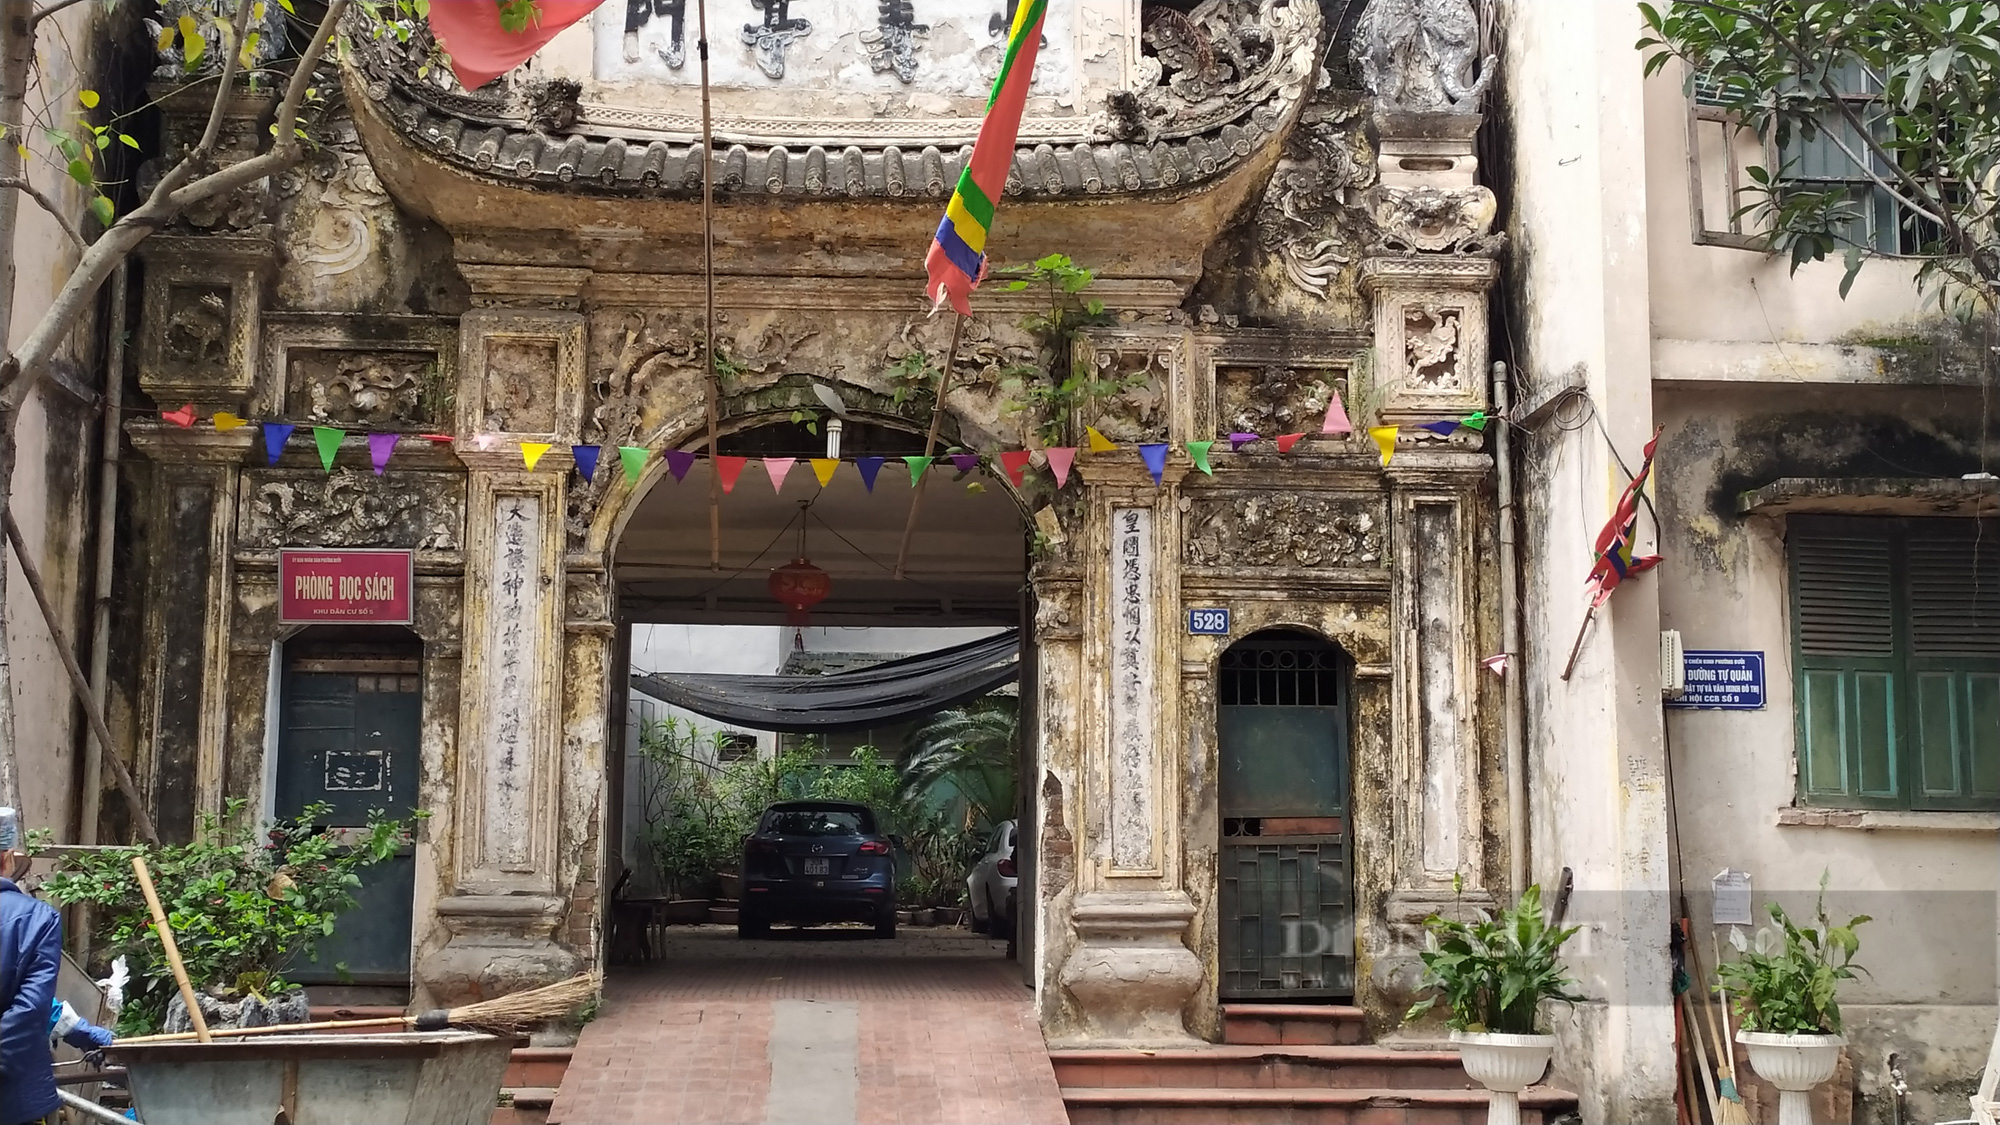 Chuyện về con phố có cổng làng cổ được ví là “đẹp nhất kinh kỳ” ở Hà Nội - Ảnh 5.